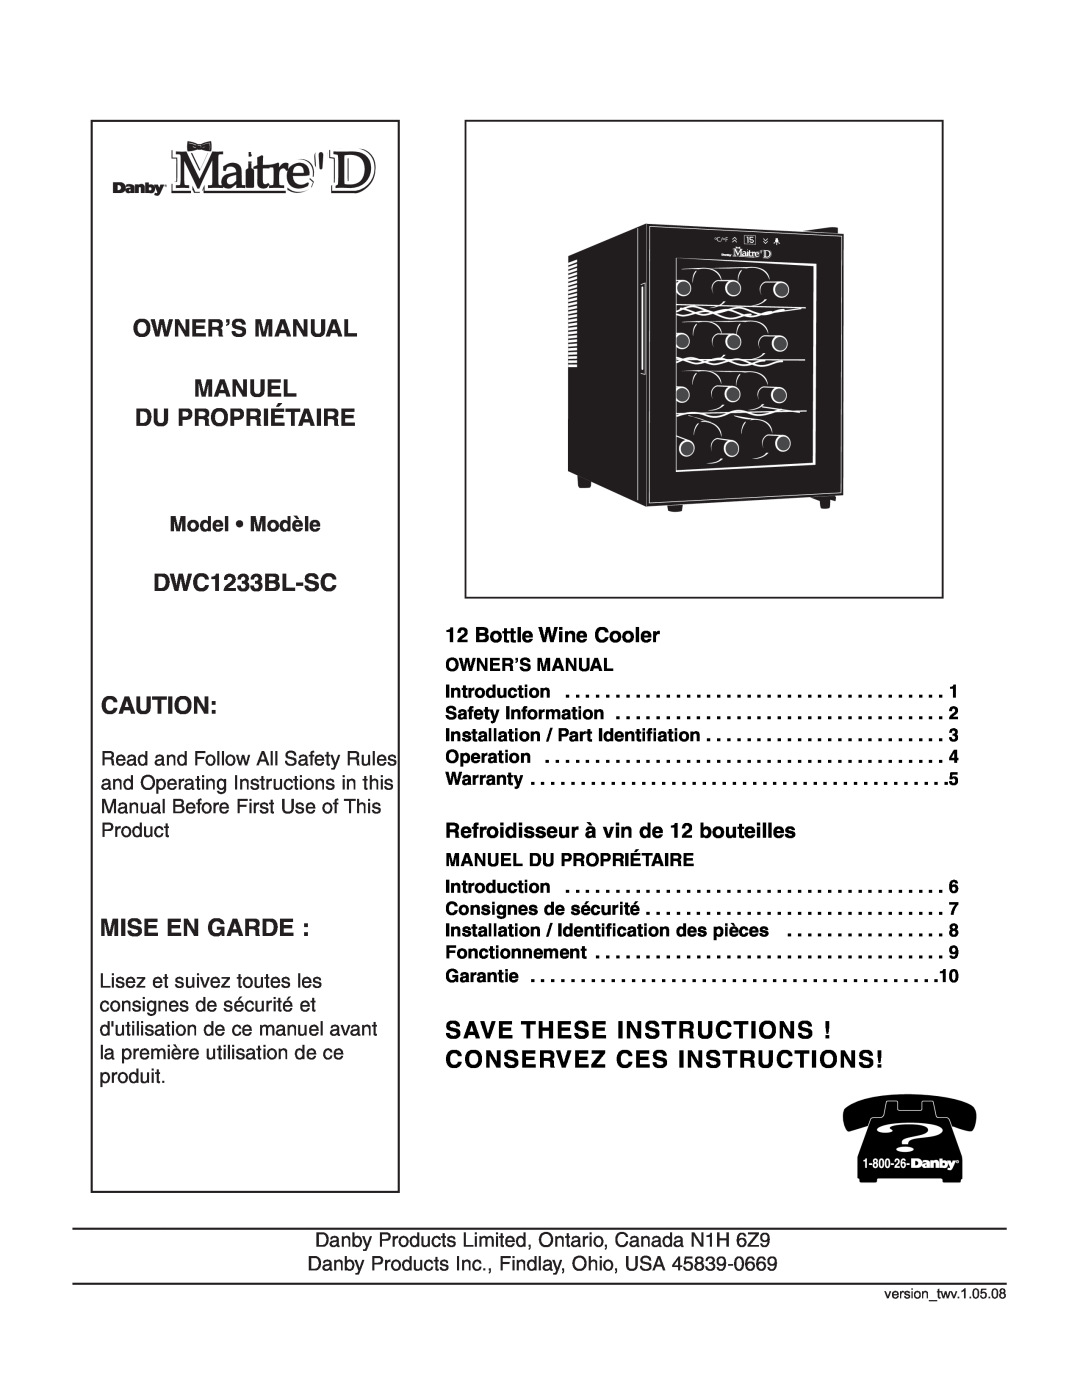 Danby DWC1233BL-SC owner manual Mise En Garde, Model Modèle, Bottle Wine Cooler, Refroidisseur à vin de 12 bouteilles 